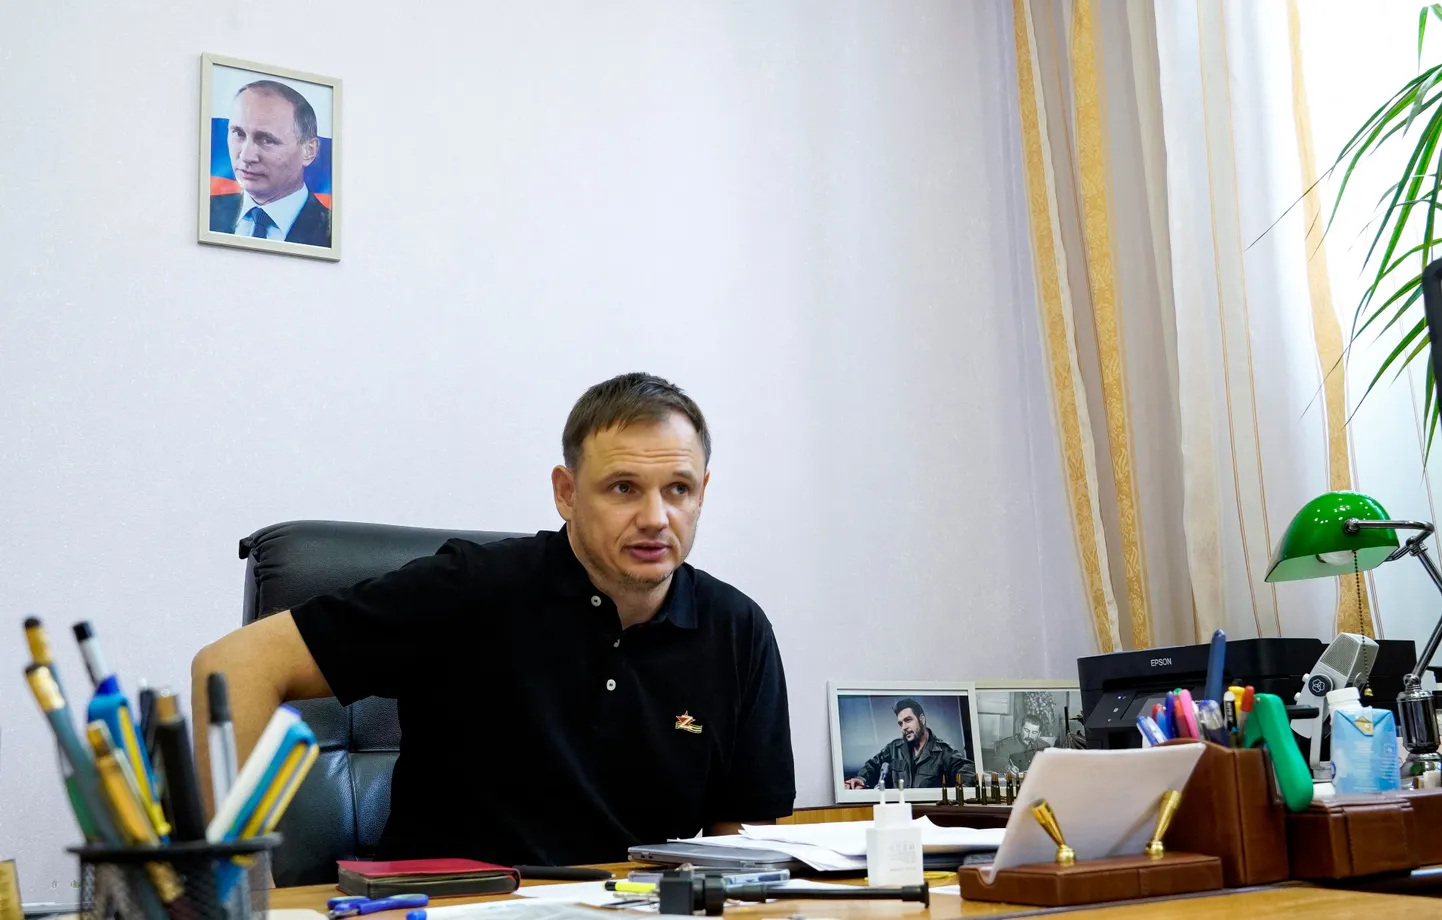 Заместитель главы пророссийской оккупационно администрации Херсона Кирилл Стремоусов в своем кабинете с портретом президента РФ Путина на стене, 20 июля 2022 года.